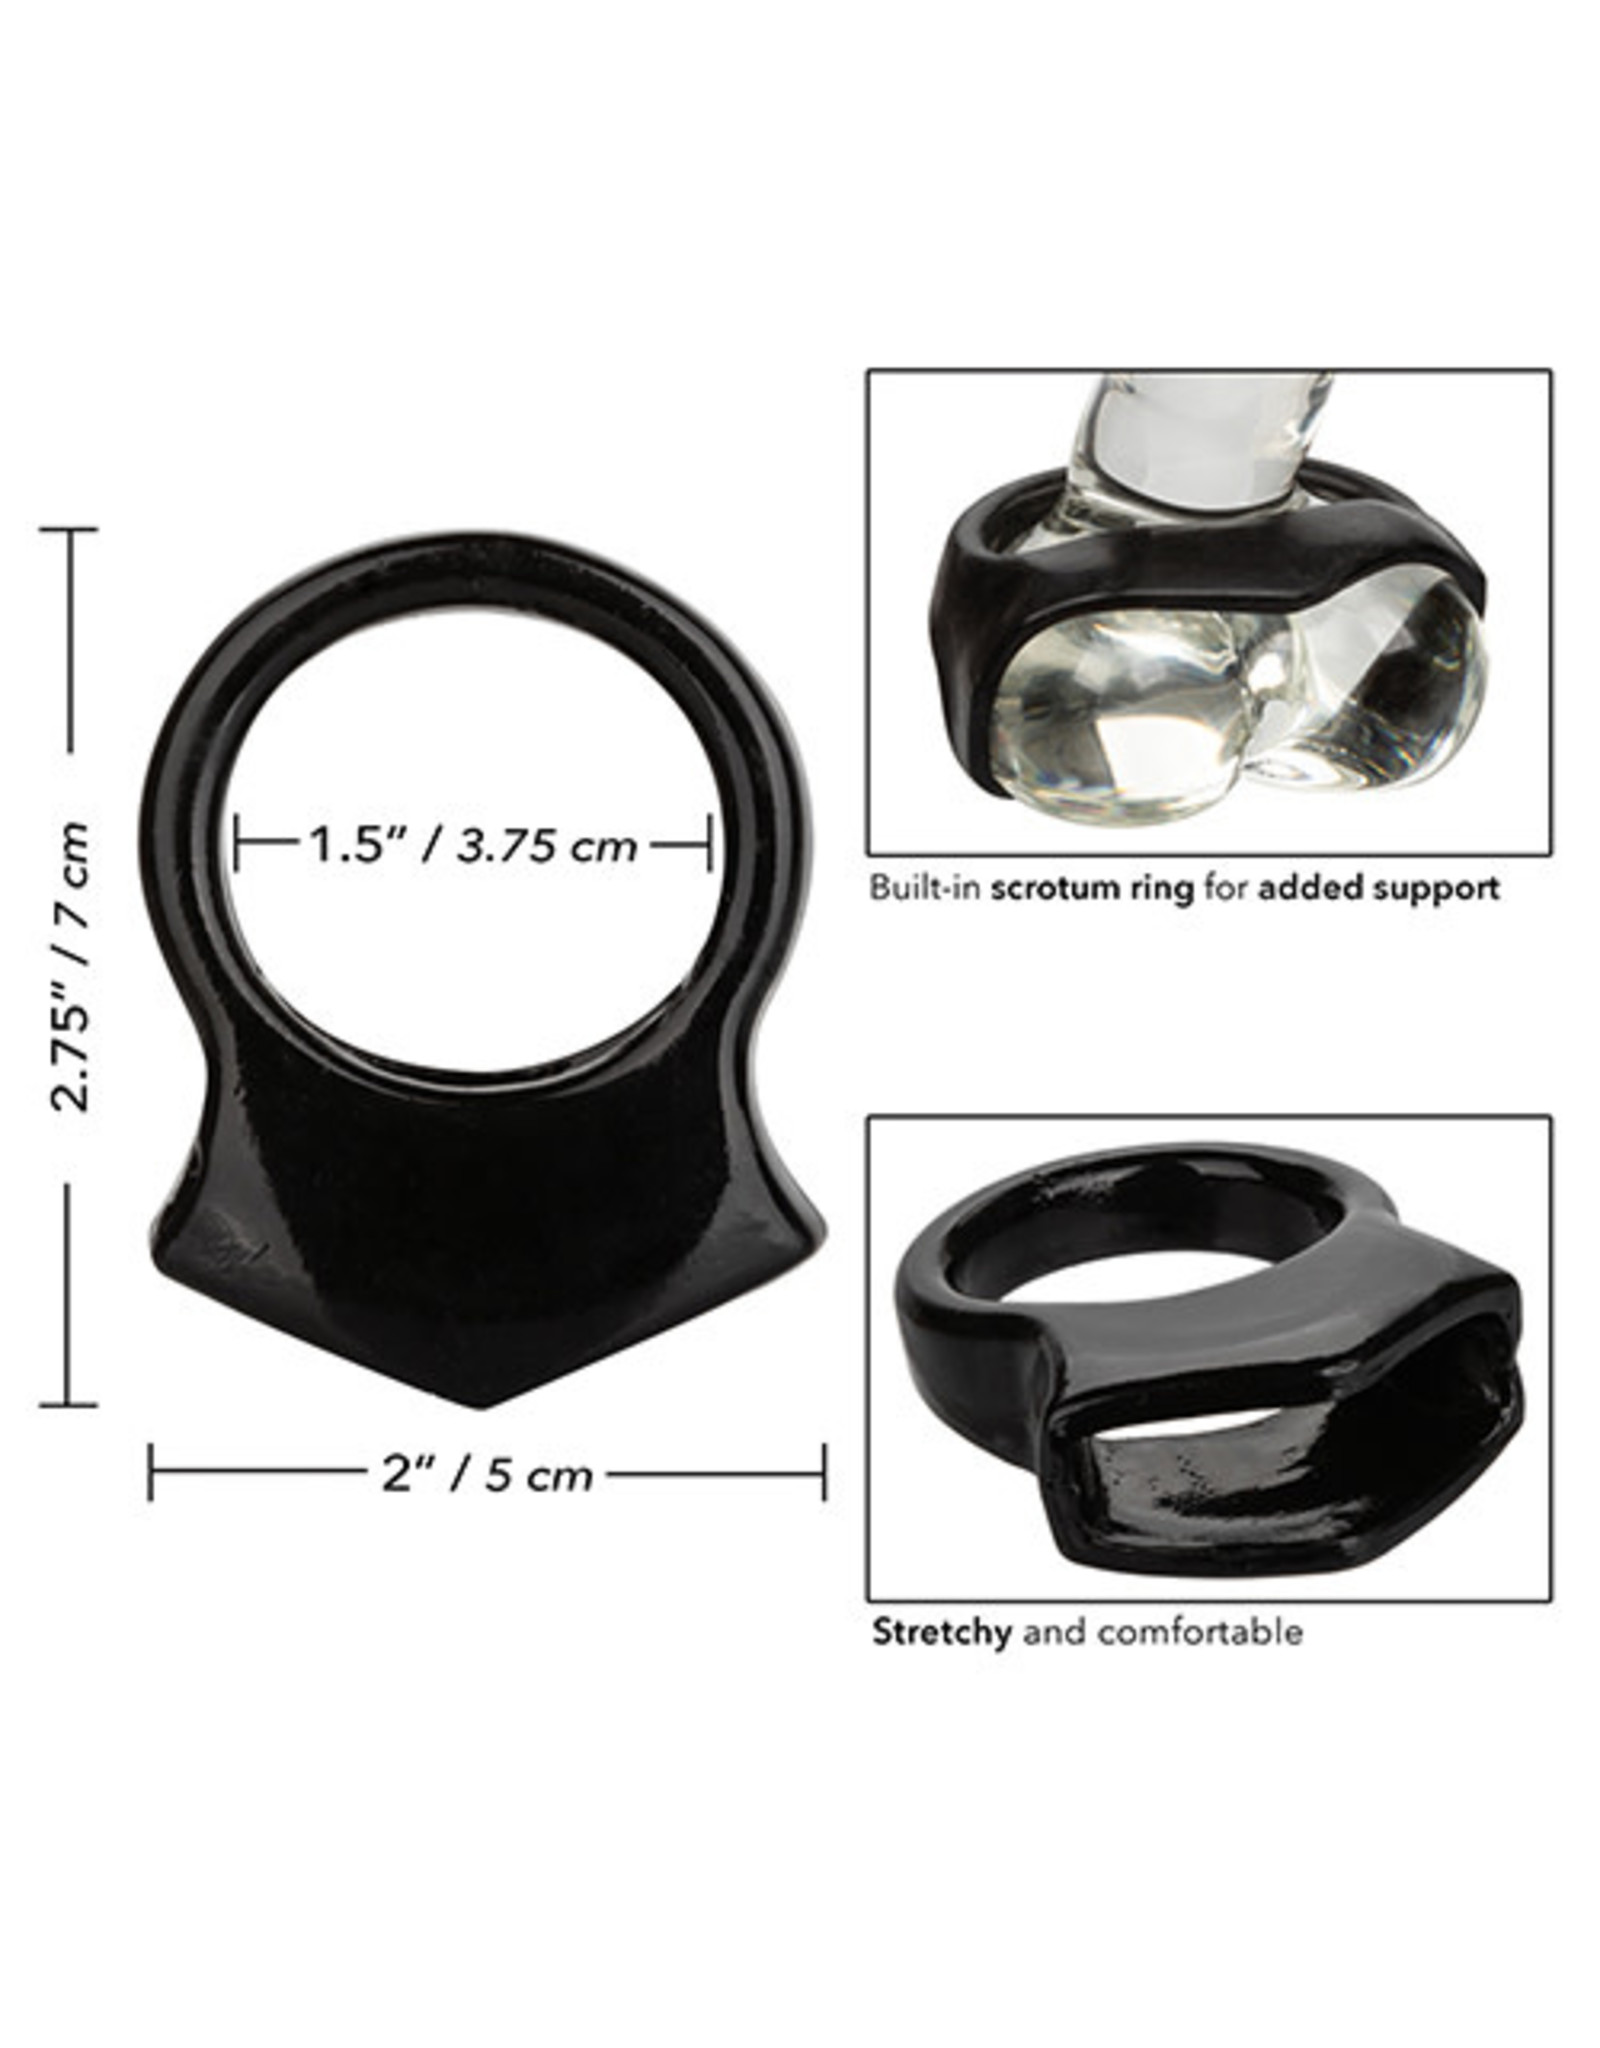 COLT COLT Snug Grip Enhancer Ring - Black